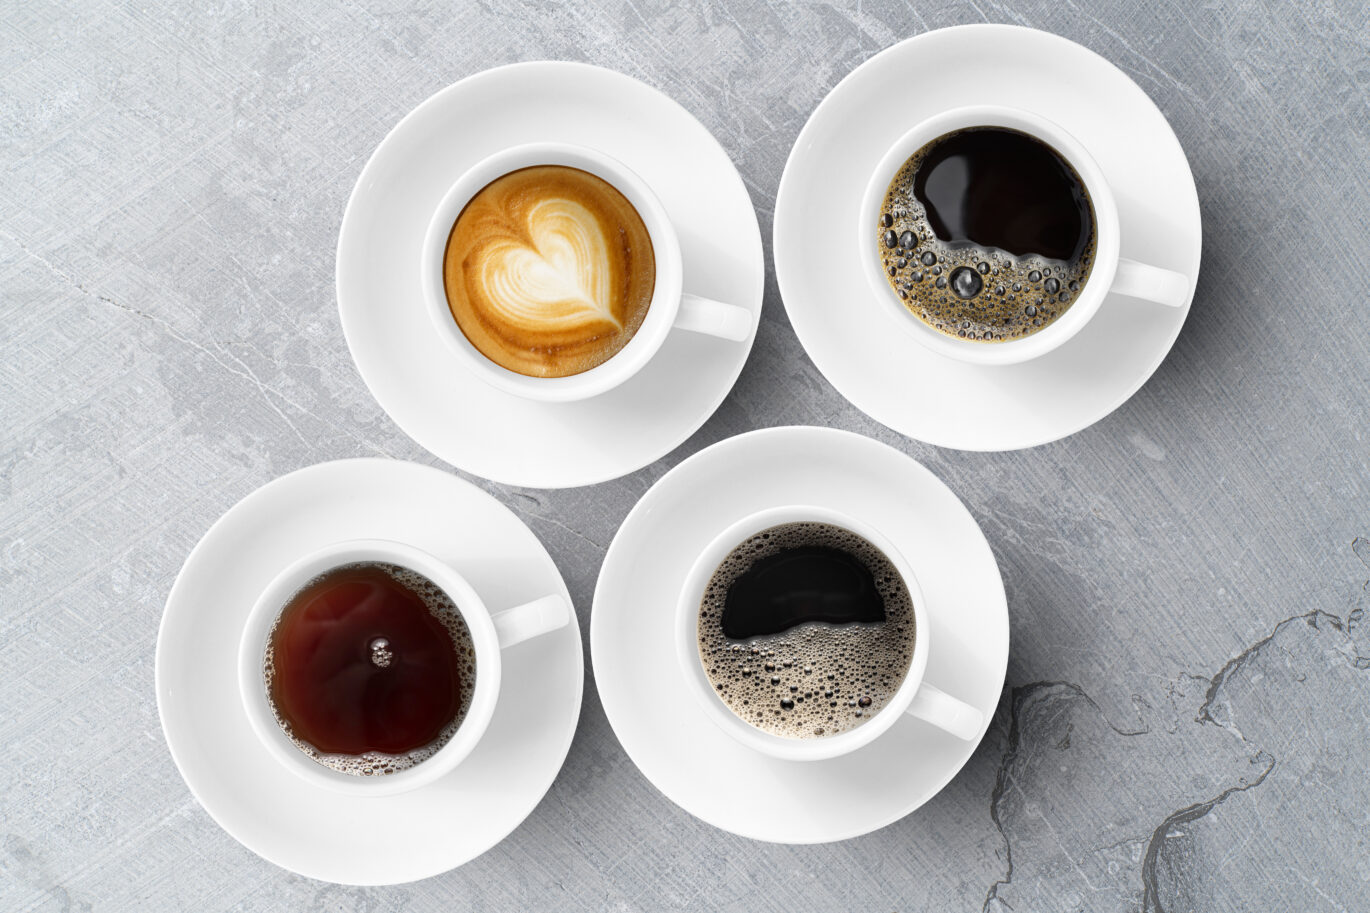 Verschillende kopjes met koffie. De koffie is met verschillende zetmethodes gezet. Hoe ga jij koffie zetten?